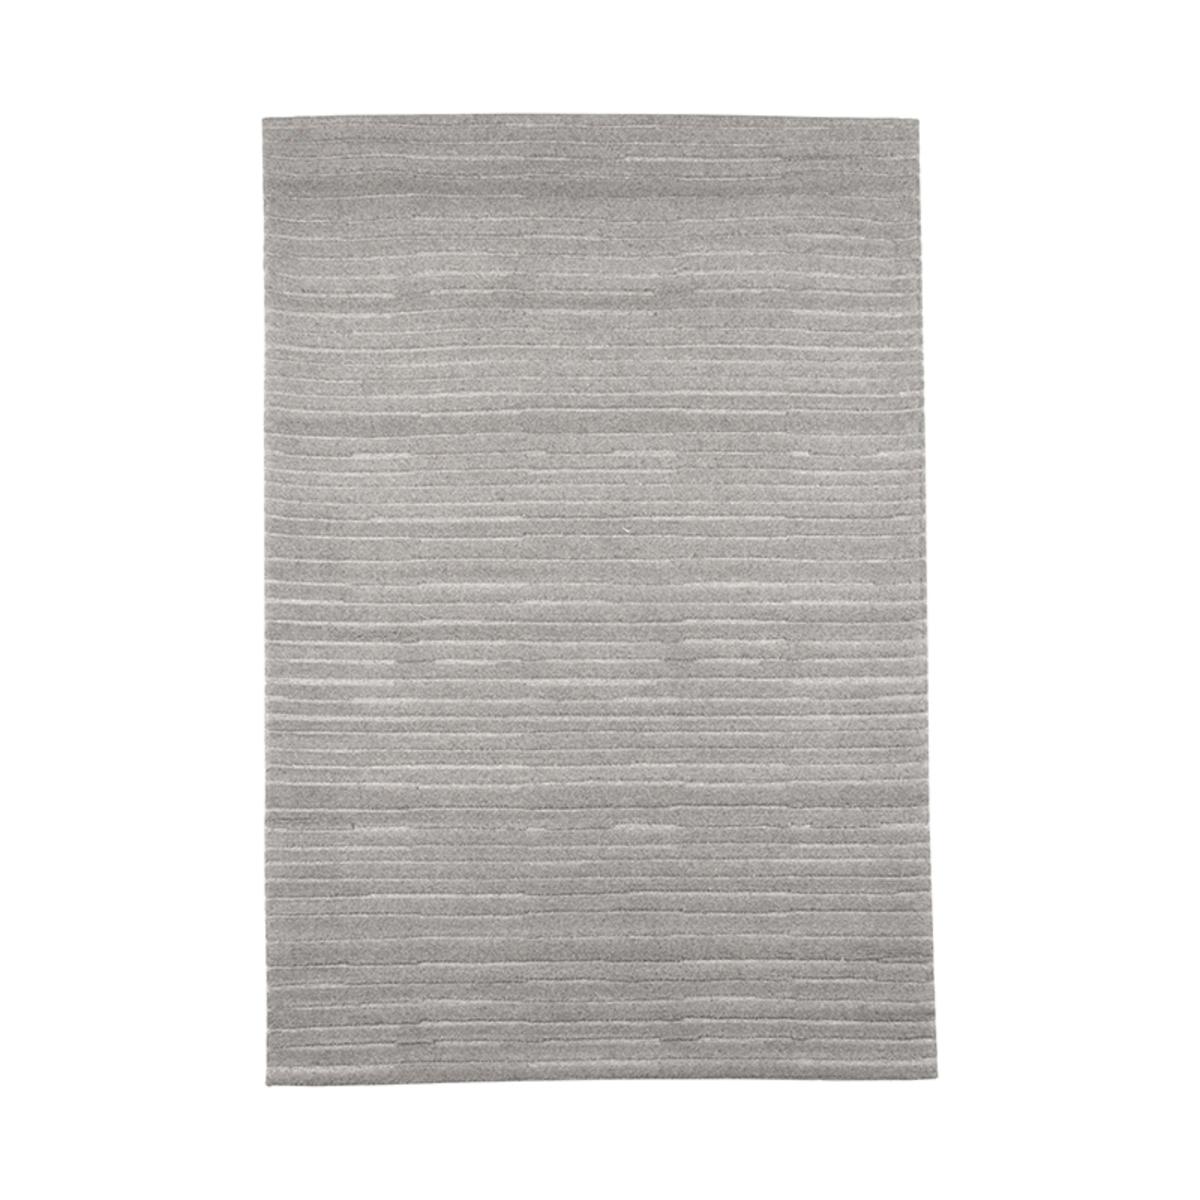  Vloerkleden Luxy - Grijs - Synthetisch - 200x300 cm afbeelding 1